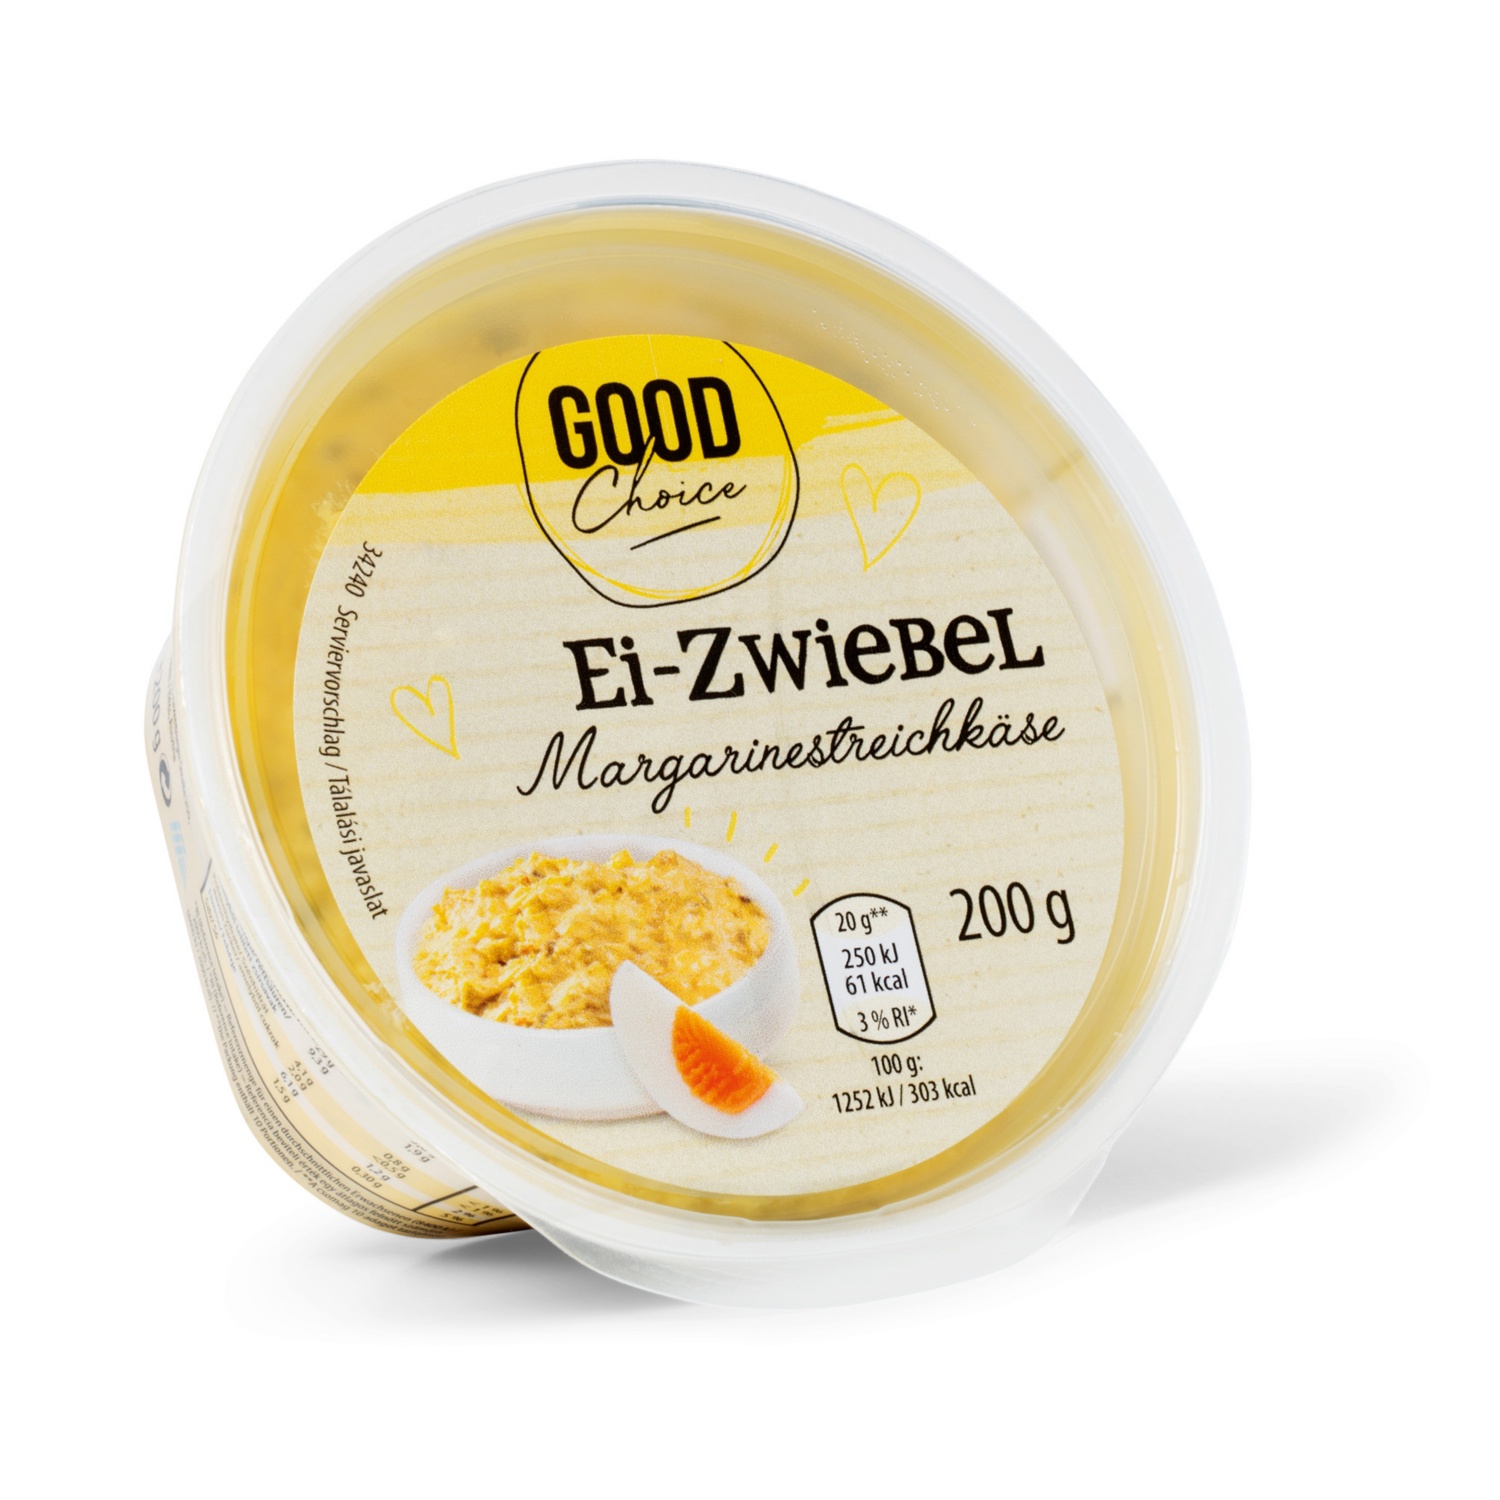 GOOD CHOICE Margarinestreichkäse, Ei-Zwiebel